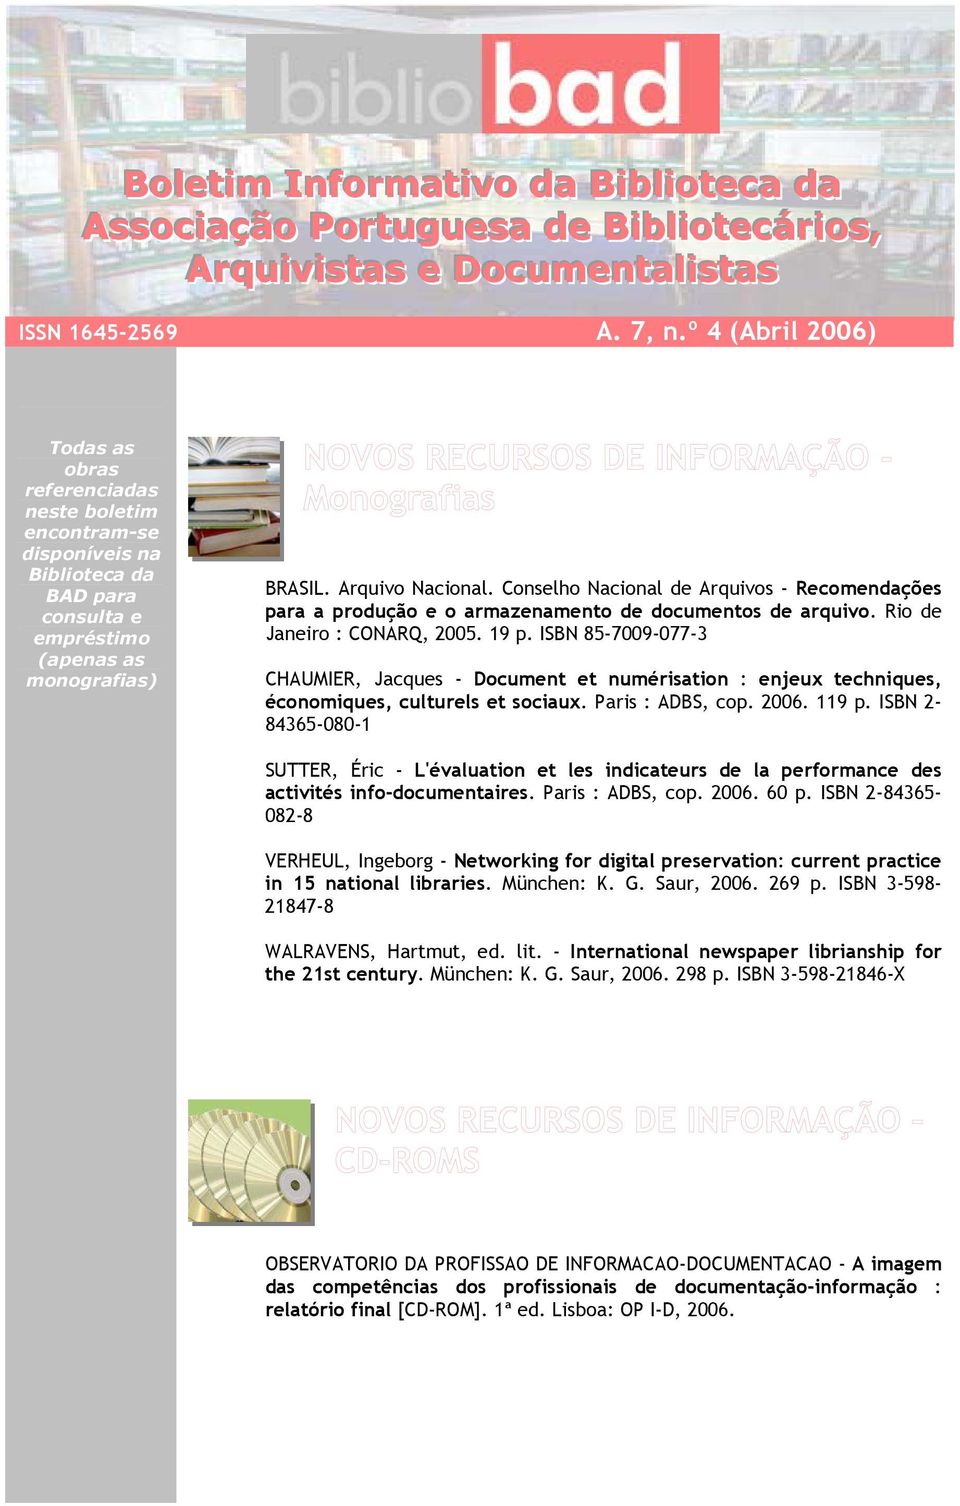 Conselho Nacional de Arquivos - Recomendações para a produção e o armazenamento de documentos de arquivo. Rio de Janeiro : CONARQ, 2005. 19 p.